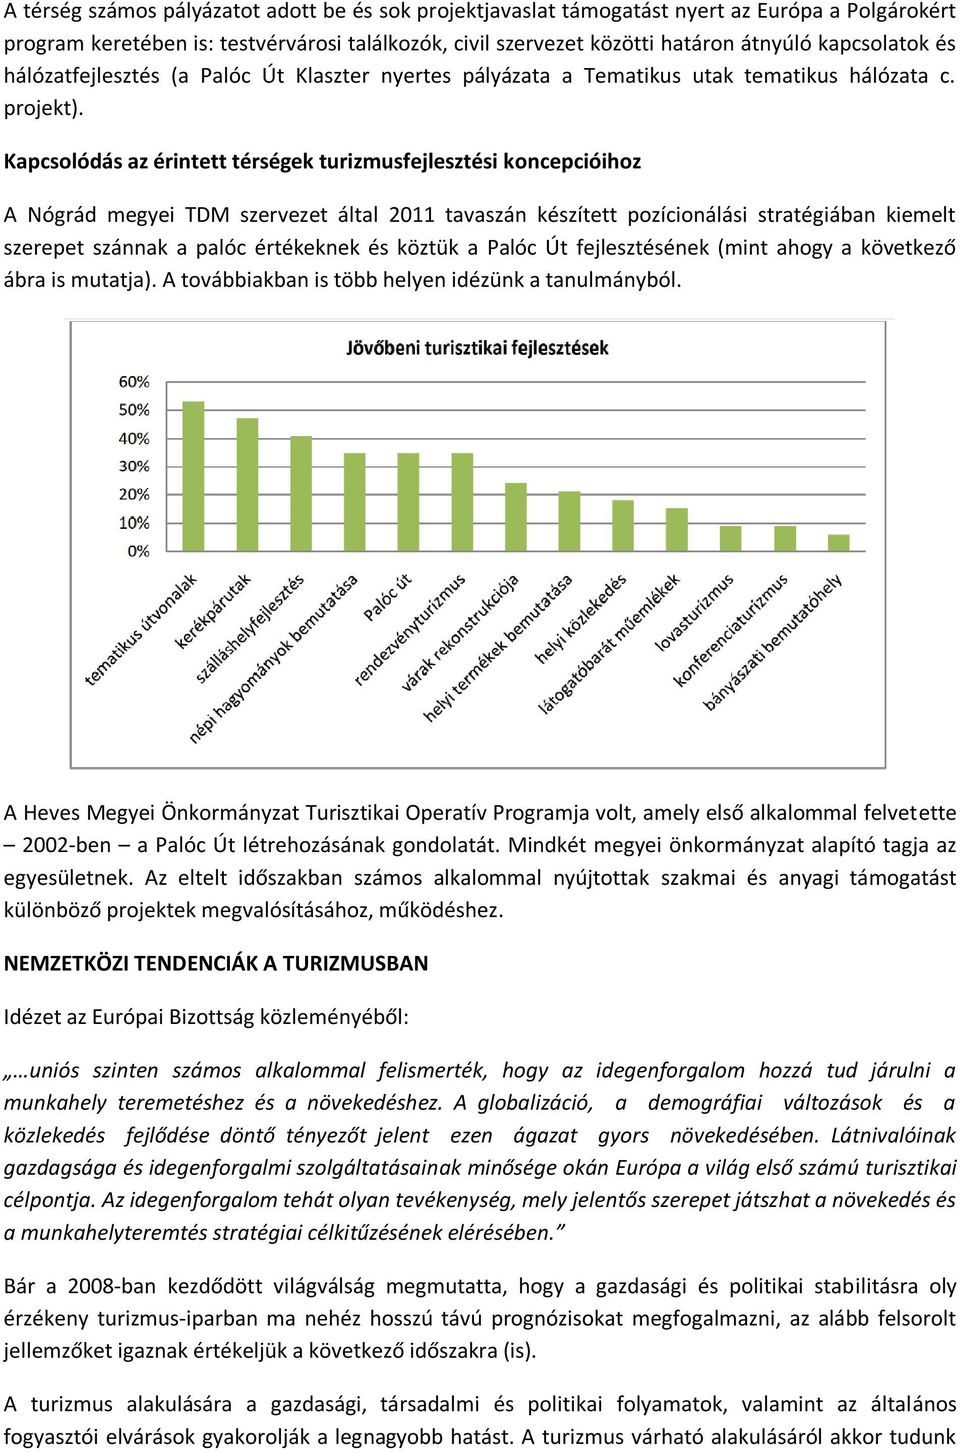 Kapcsolódás az érintett térségek turizmusfejlesztési koncepcióihoz A Nógrád megyei TDM szervezet által 2011 tavaszán készített pozícionálási stratégiában kiemelt szerepet szánnak a palóc értékeknek